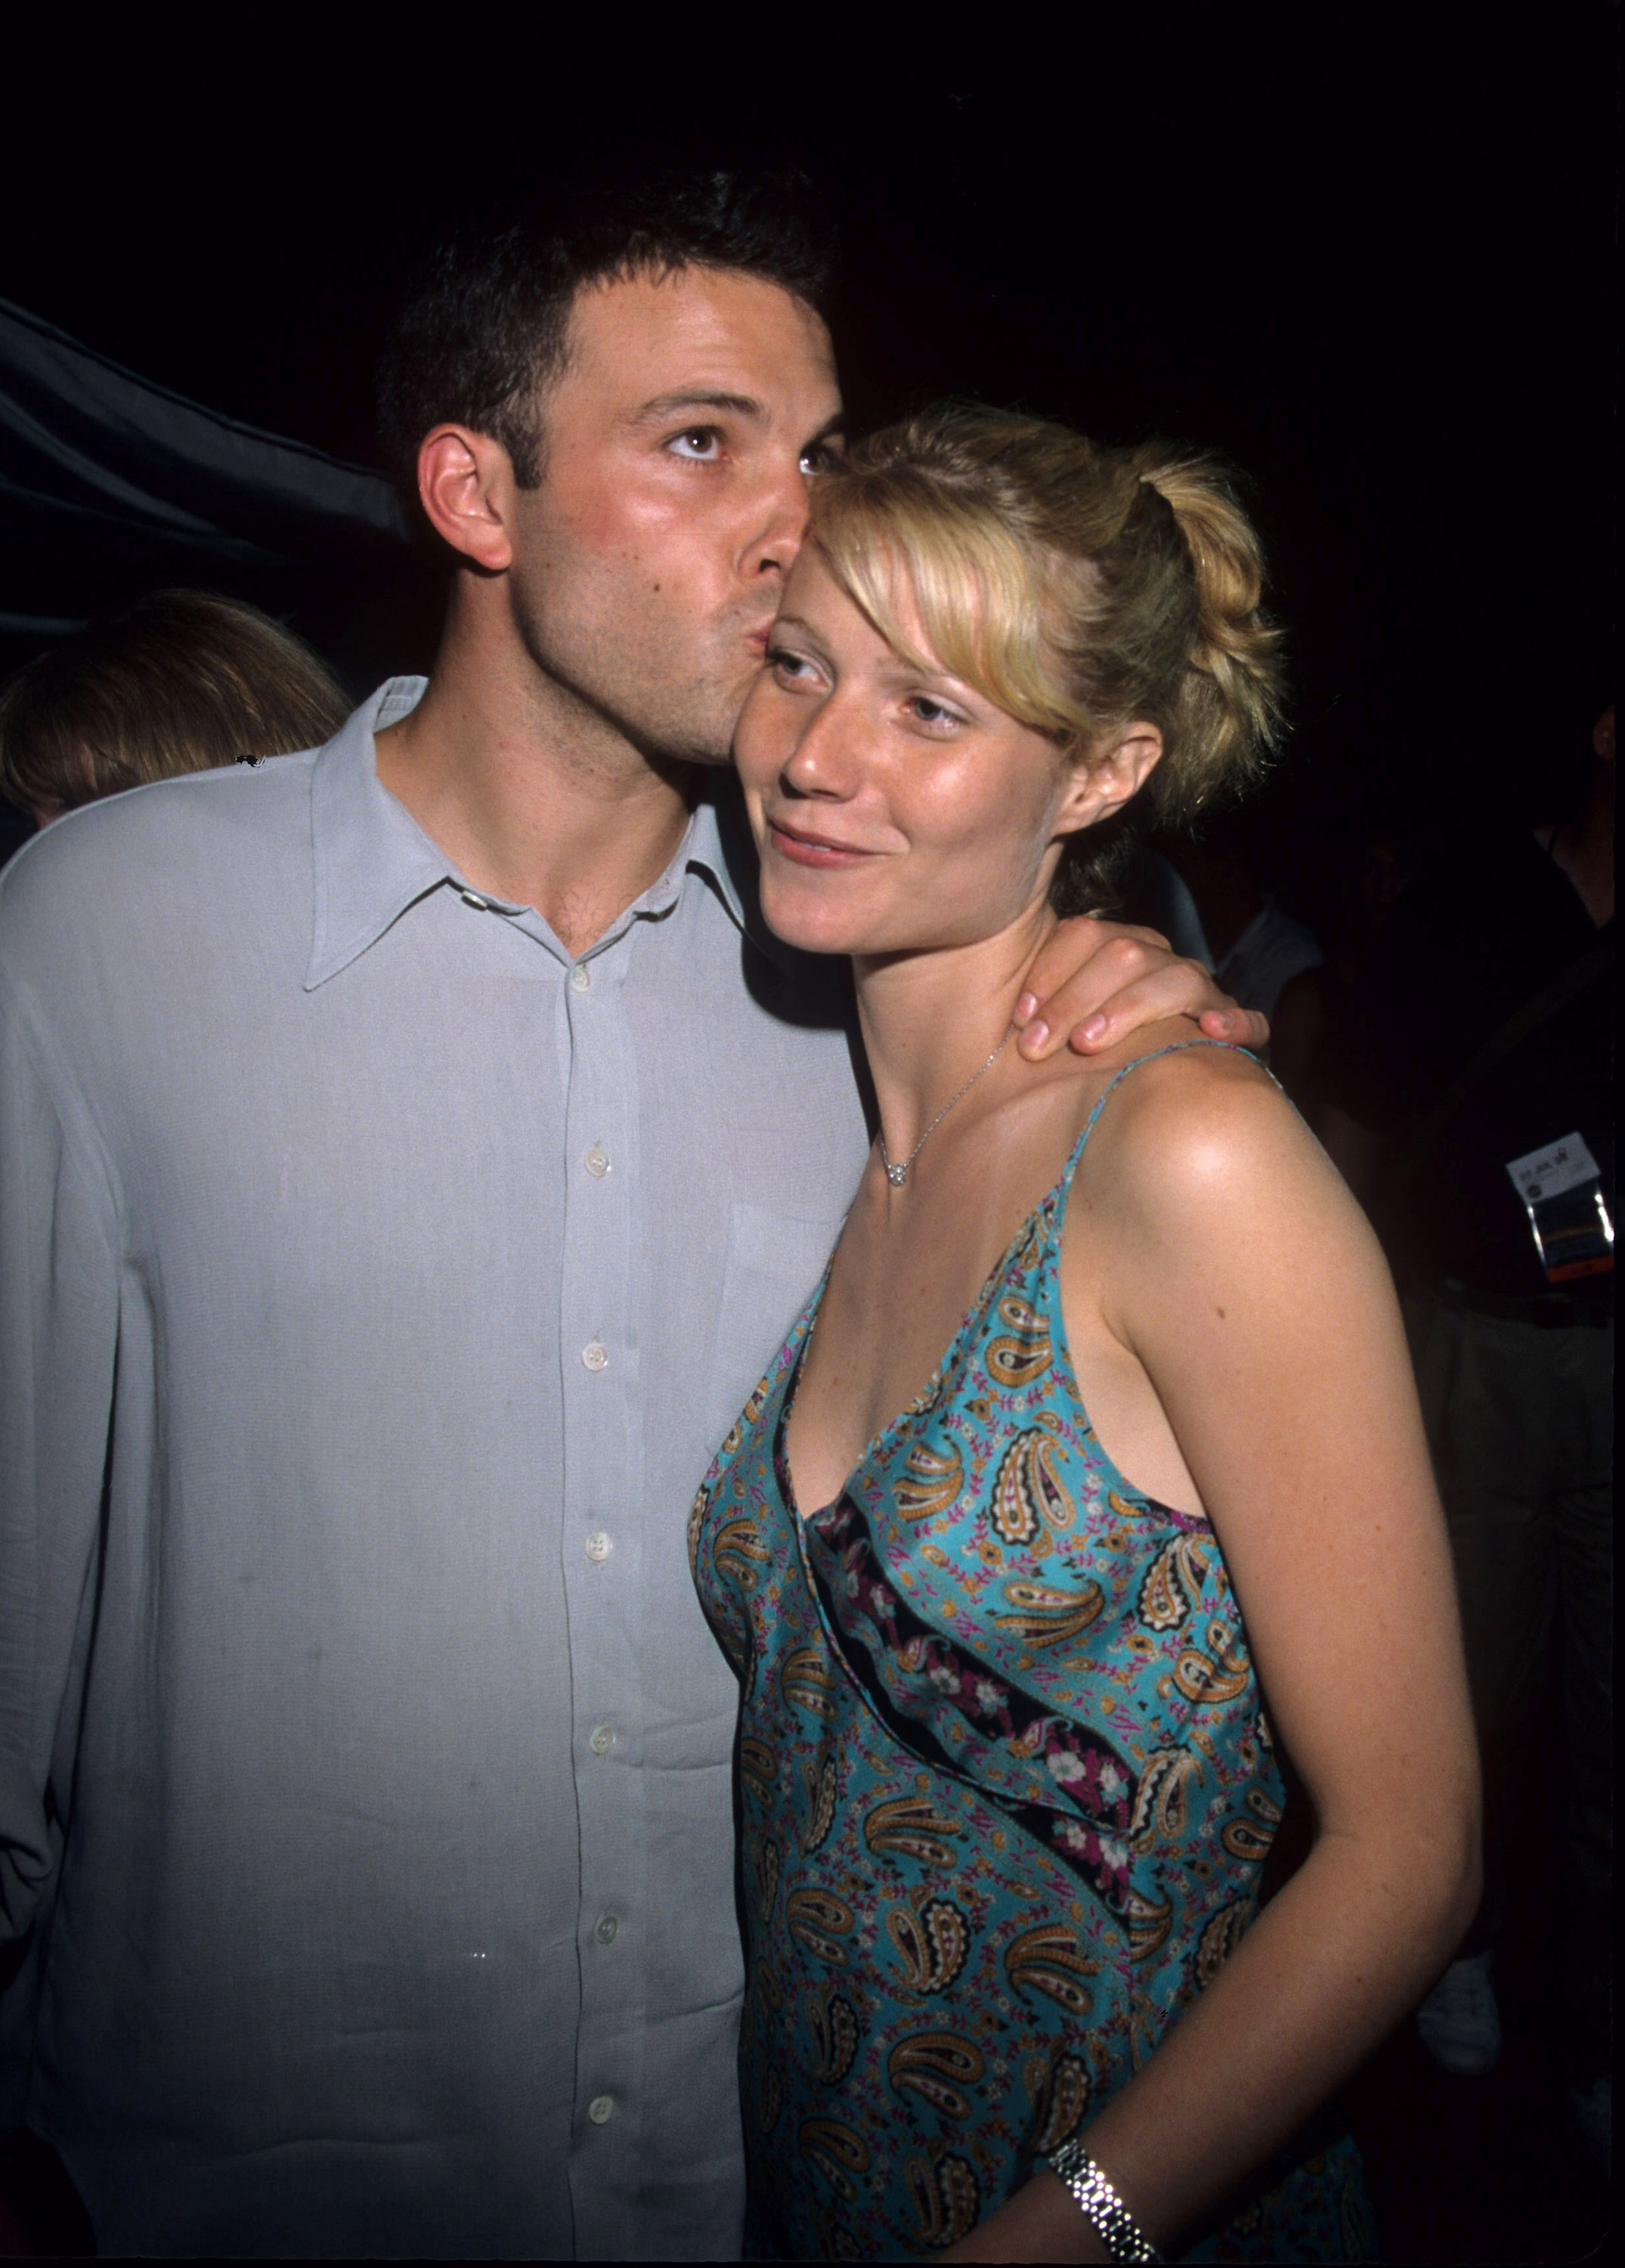 Ben Affleck et Gwyneth Paltrow à la première de "Armageddon", 1998 | Source : Getty Images